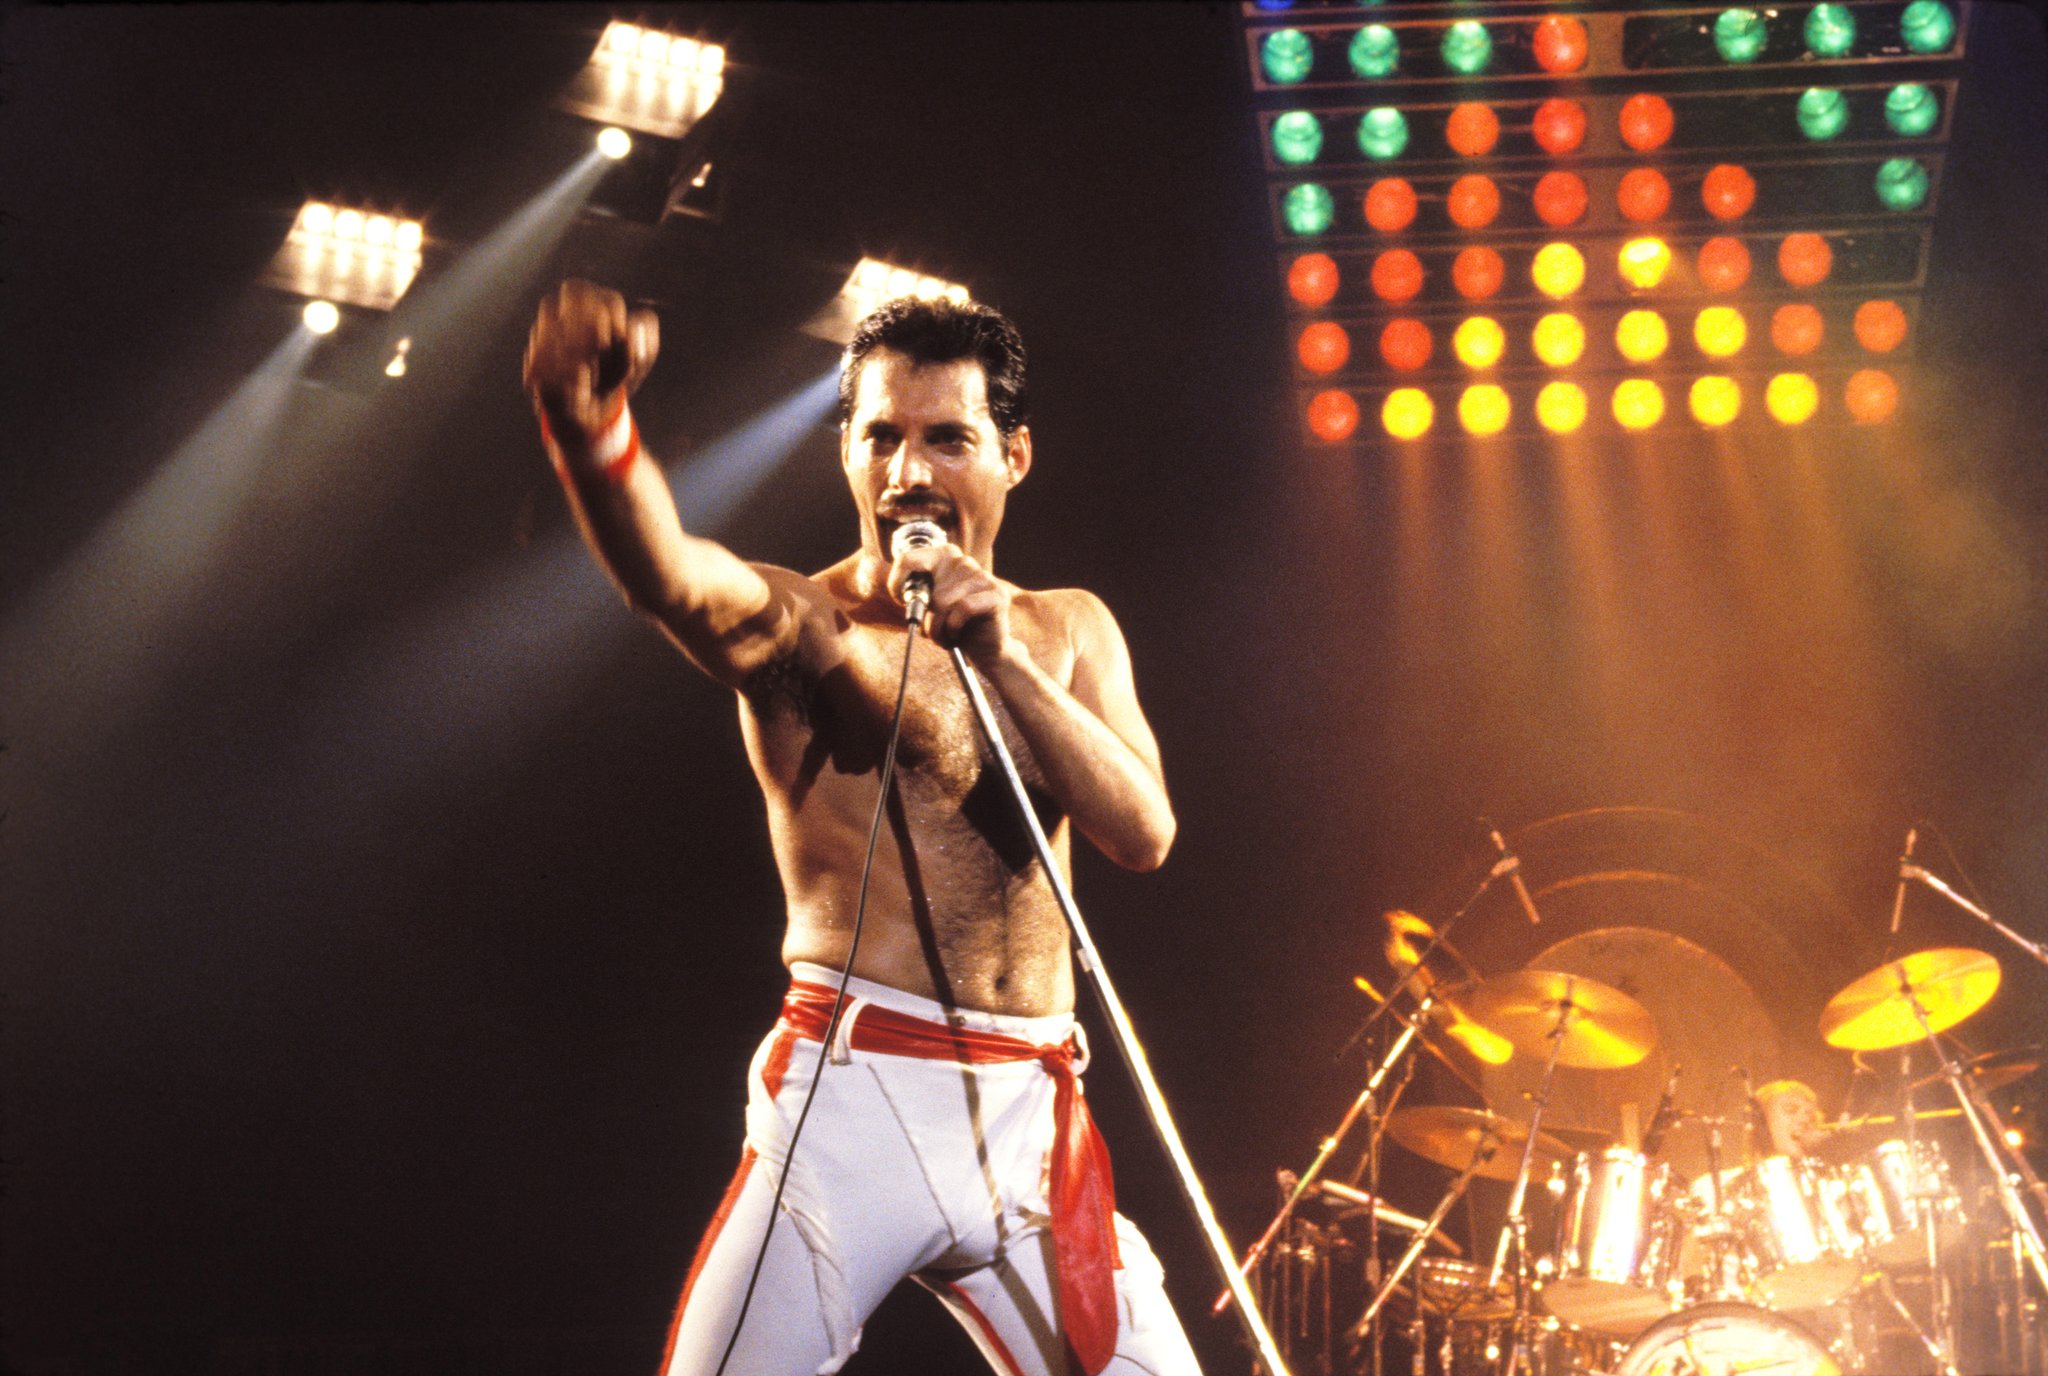 Freddie Mercury magoou melhor amigo antes de morrer; veja o que aconteceu